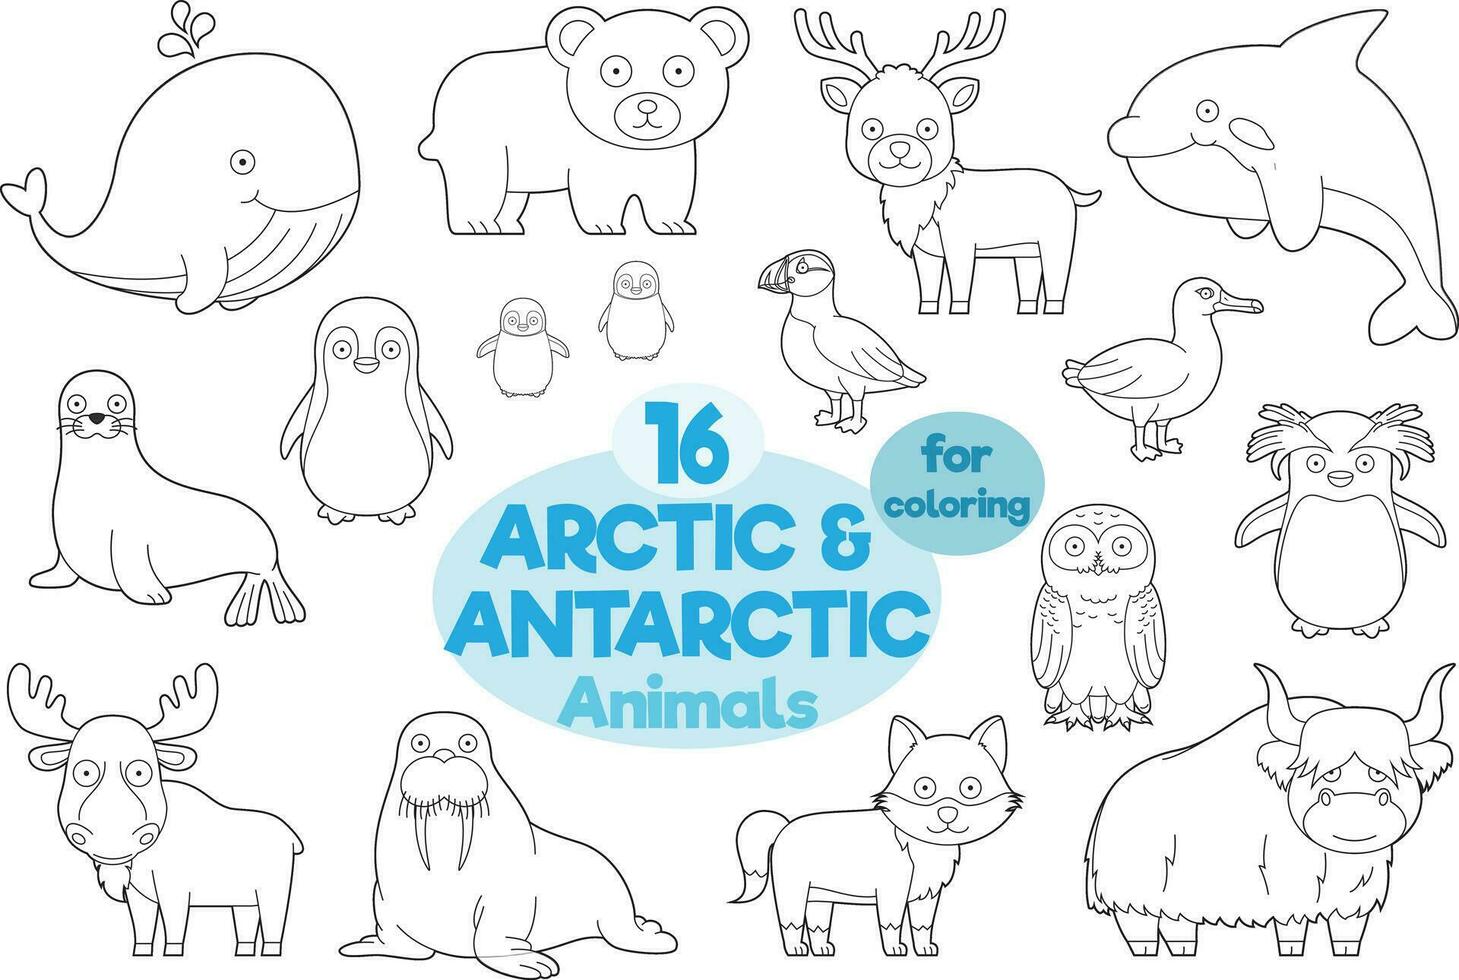 impostato di 16 artico e antartico animali per colorazione nel cartone animato stile vettore illustrazione